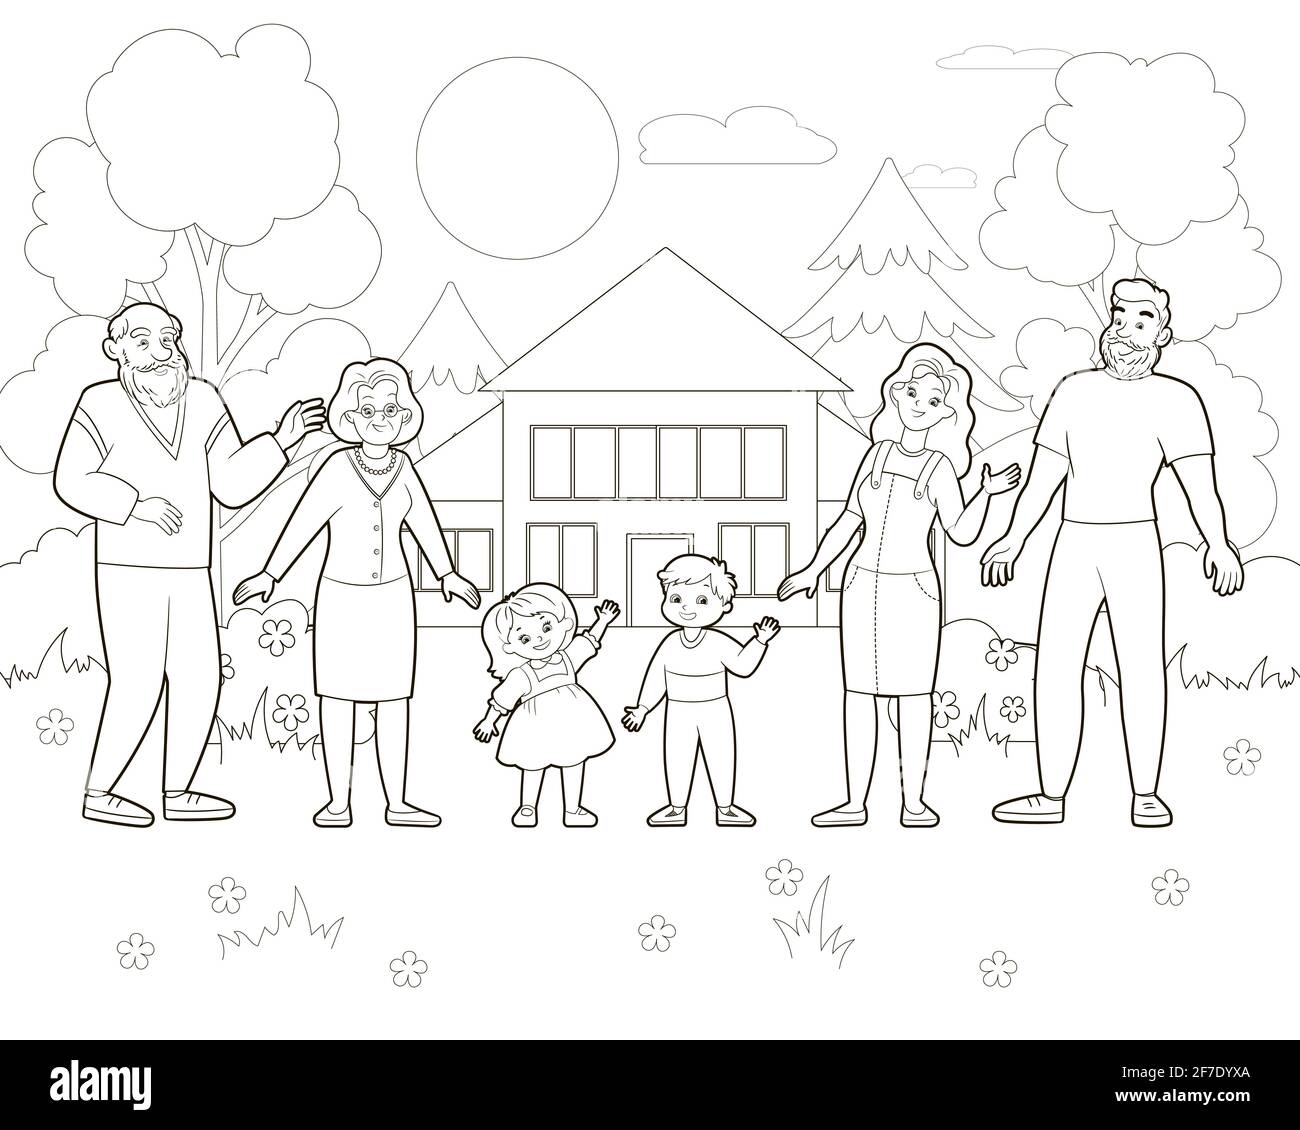 Livre de coloriage: Grande famille heureuse à l'extérieur, sur le fond de la maison et de la forêt. Illustration vectorielle de style dessin animé, dessin au trait noir et blanc Illustration de Vecteur